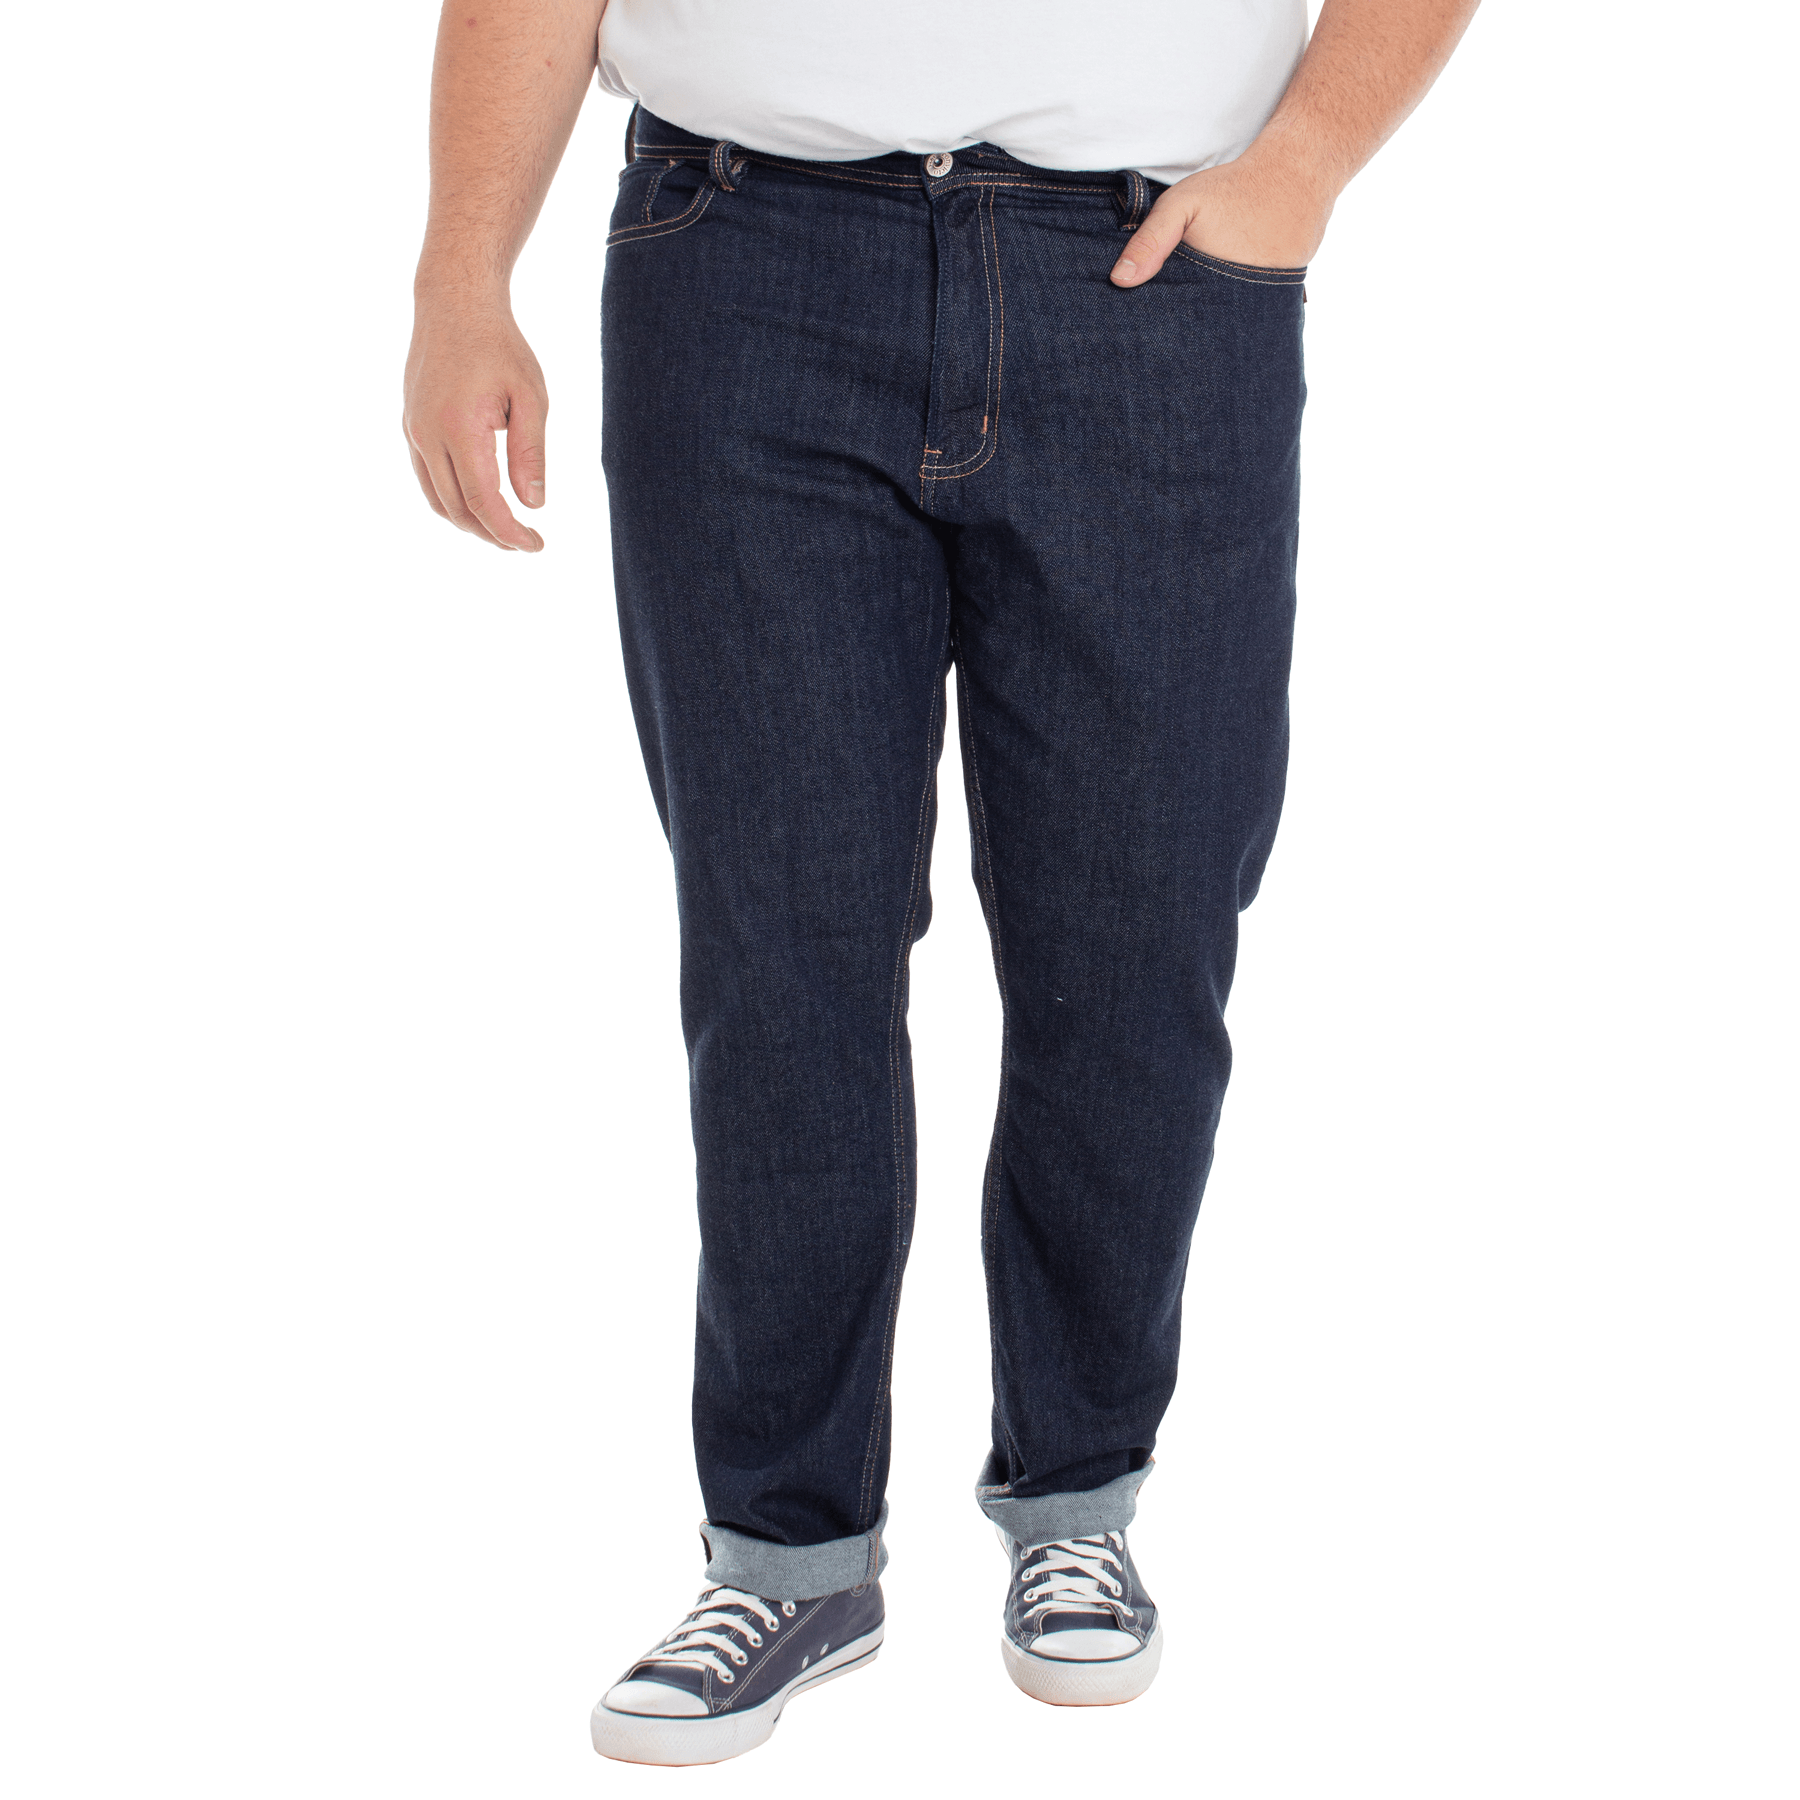 Calca-Jeans-Plus-Size-Masculina-Convicto-Regular-Bordada